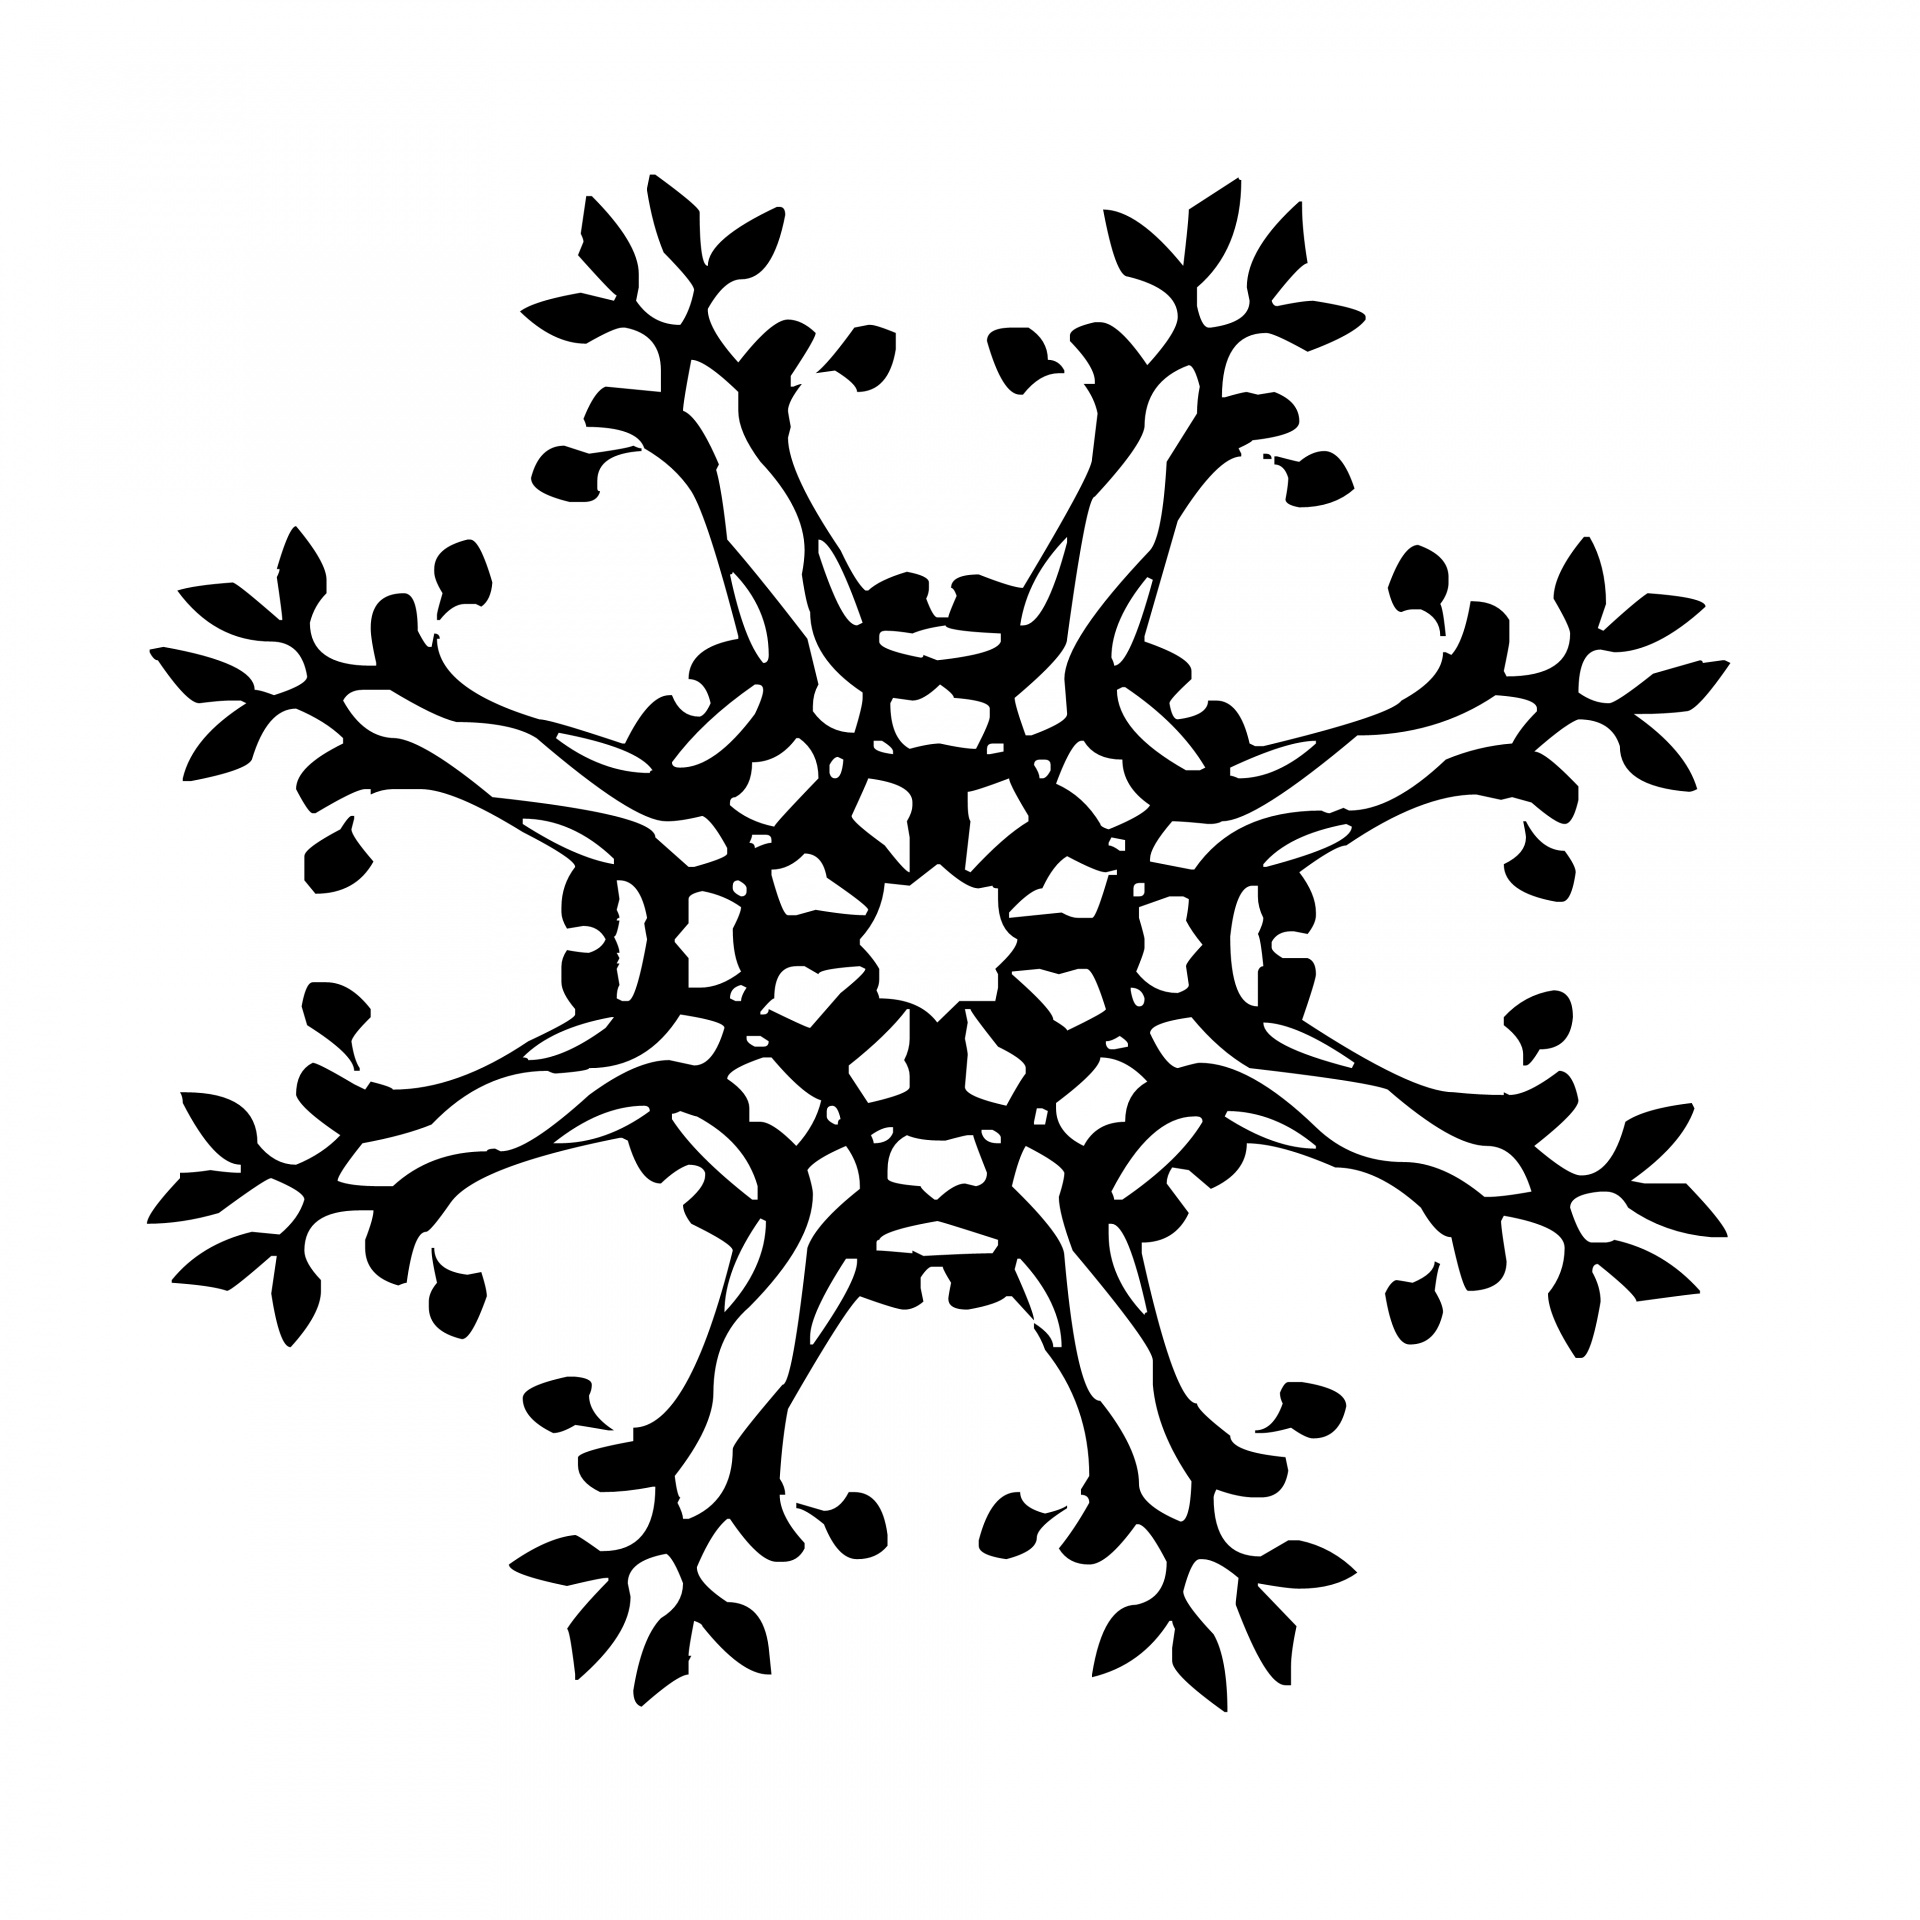 black snowflake icon graphic on white background